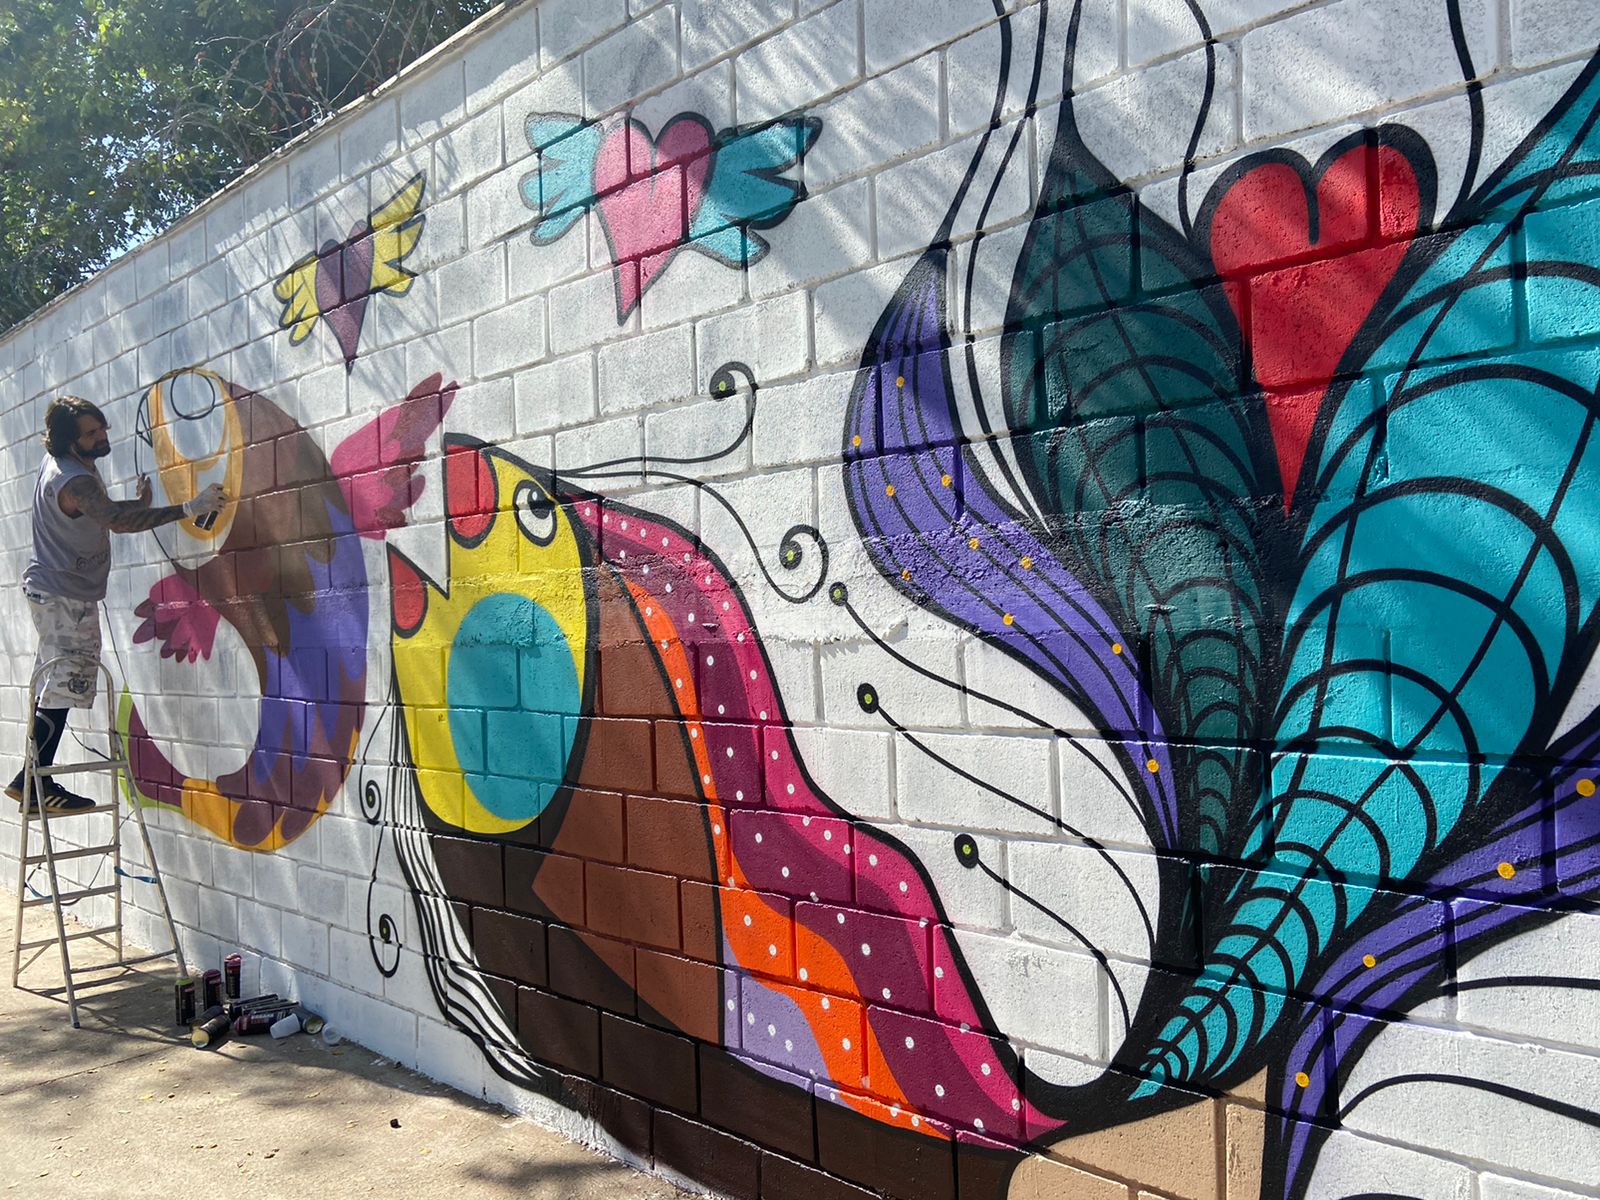 Muro do Convivium Emaús ganha cores e destaque com grafites